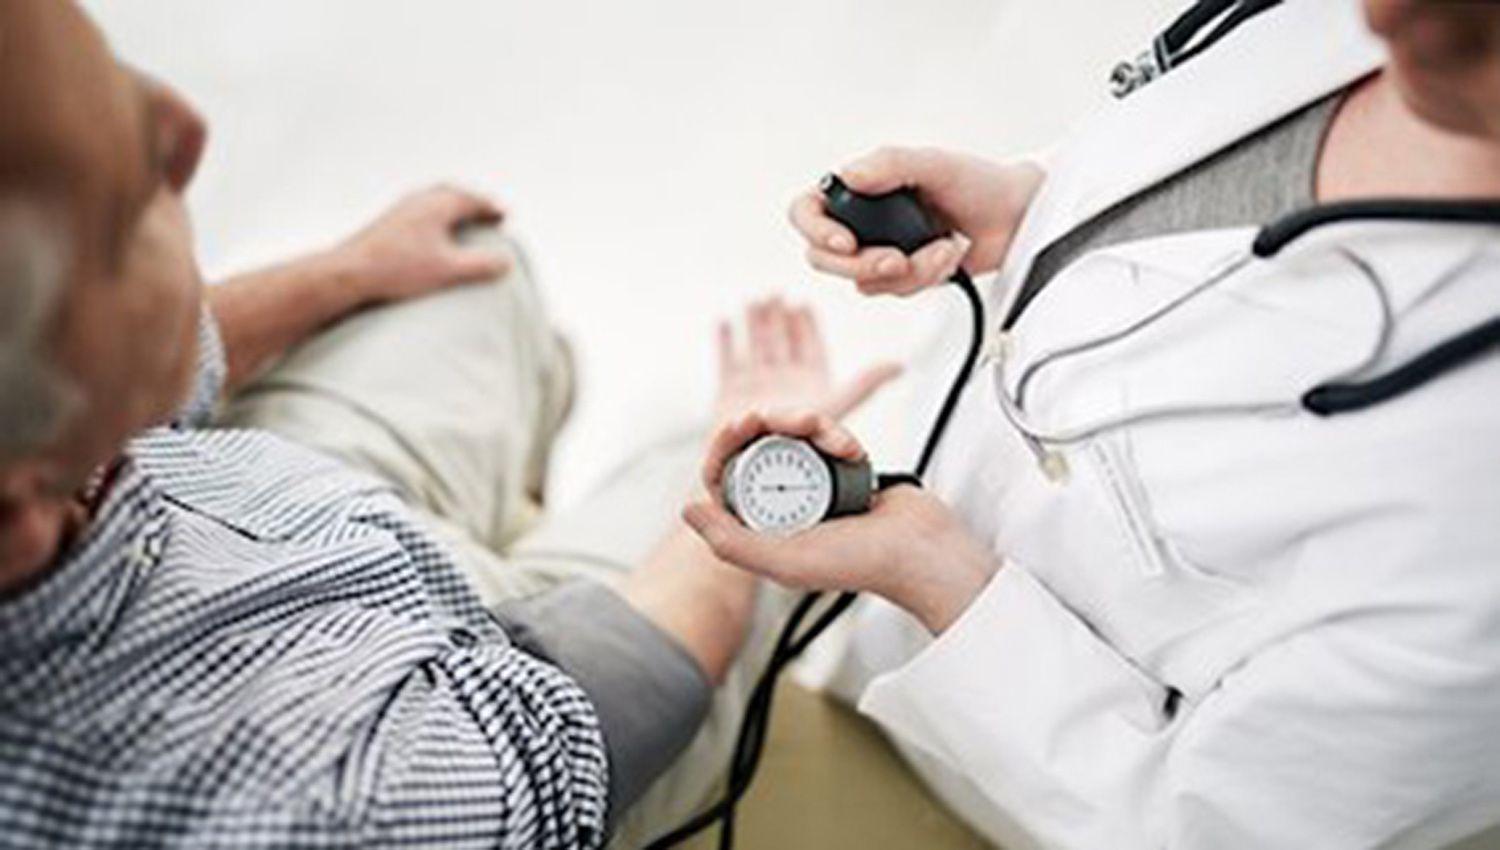 El 46-en-porciento- de la poblacioacuten tiene hipertensioacuten y soacutelo 2 de cada 10 pacientes estaacuten controlados